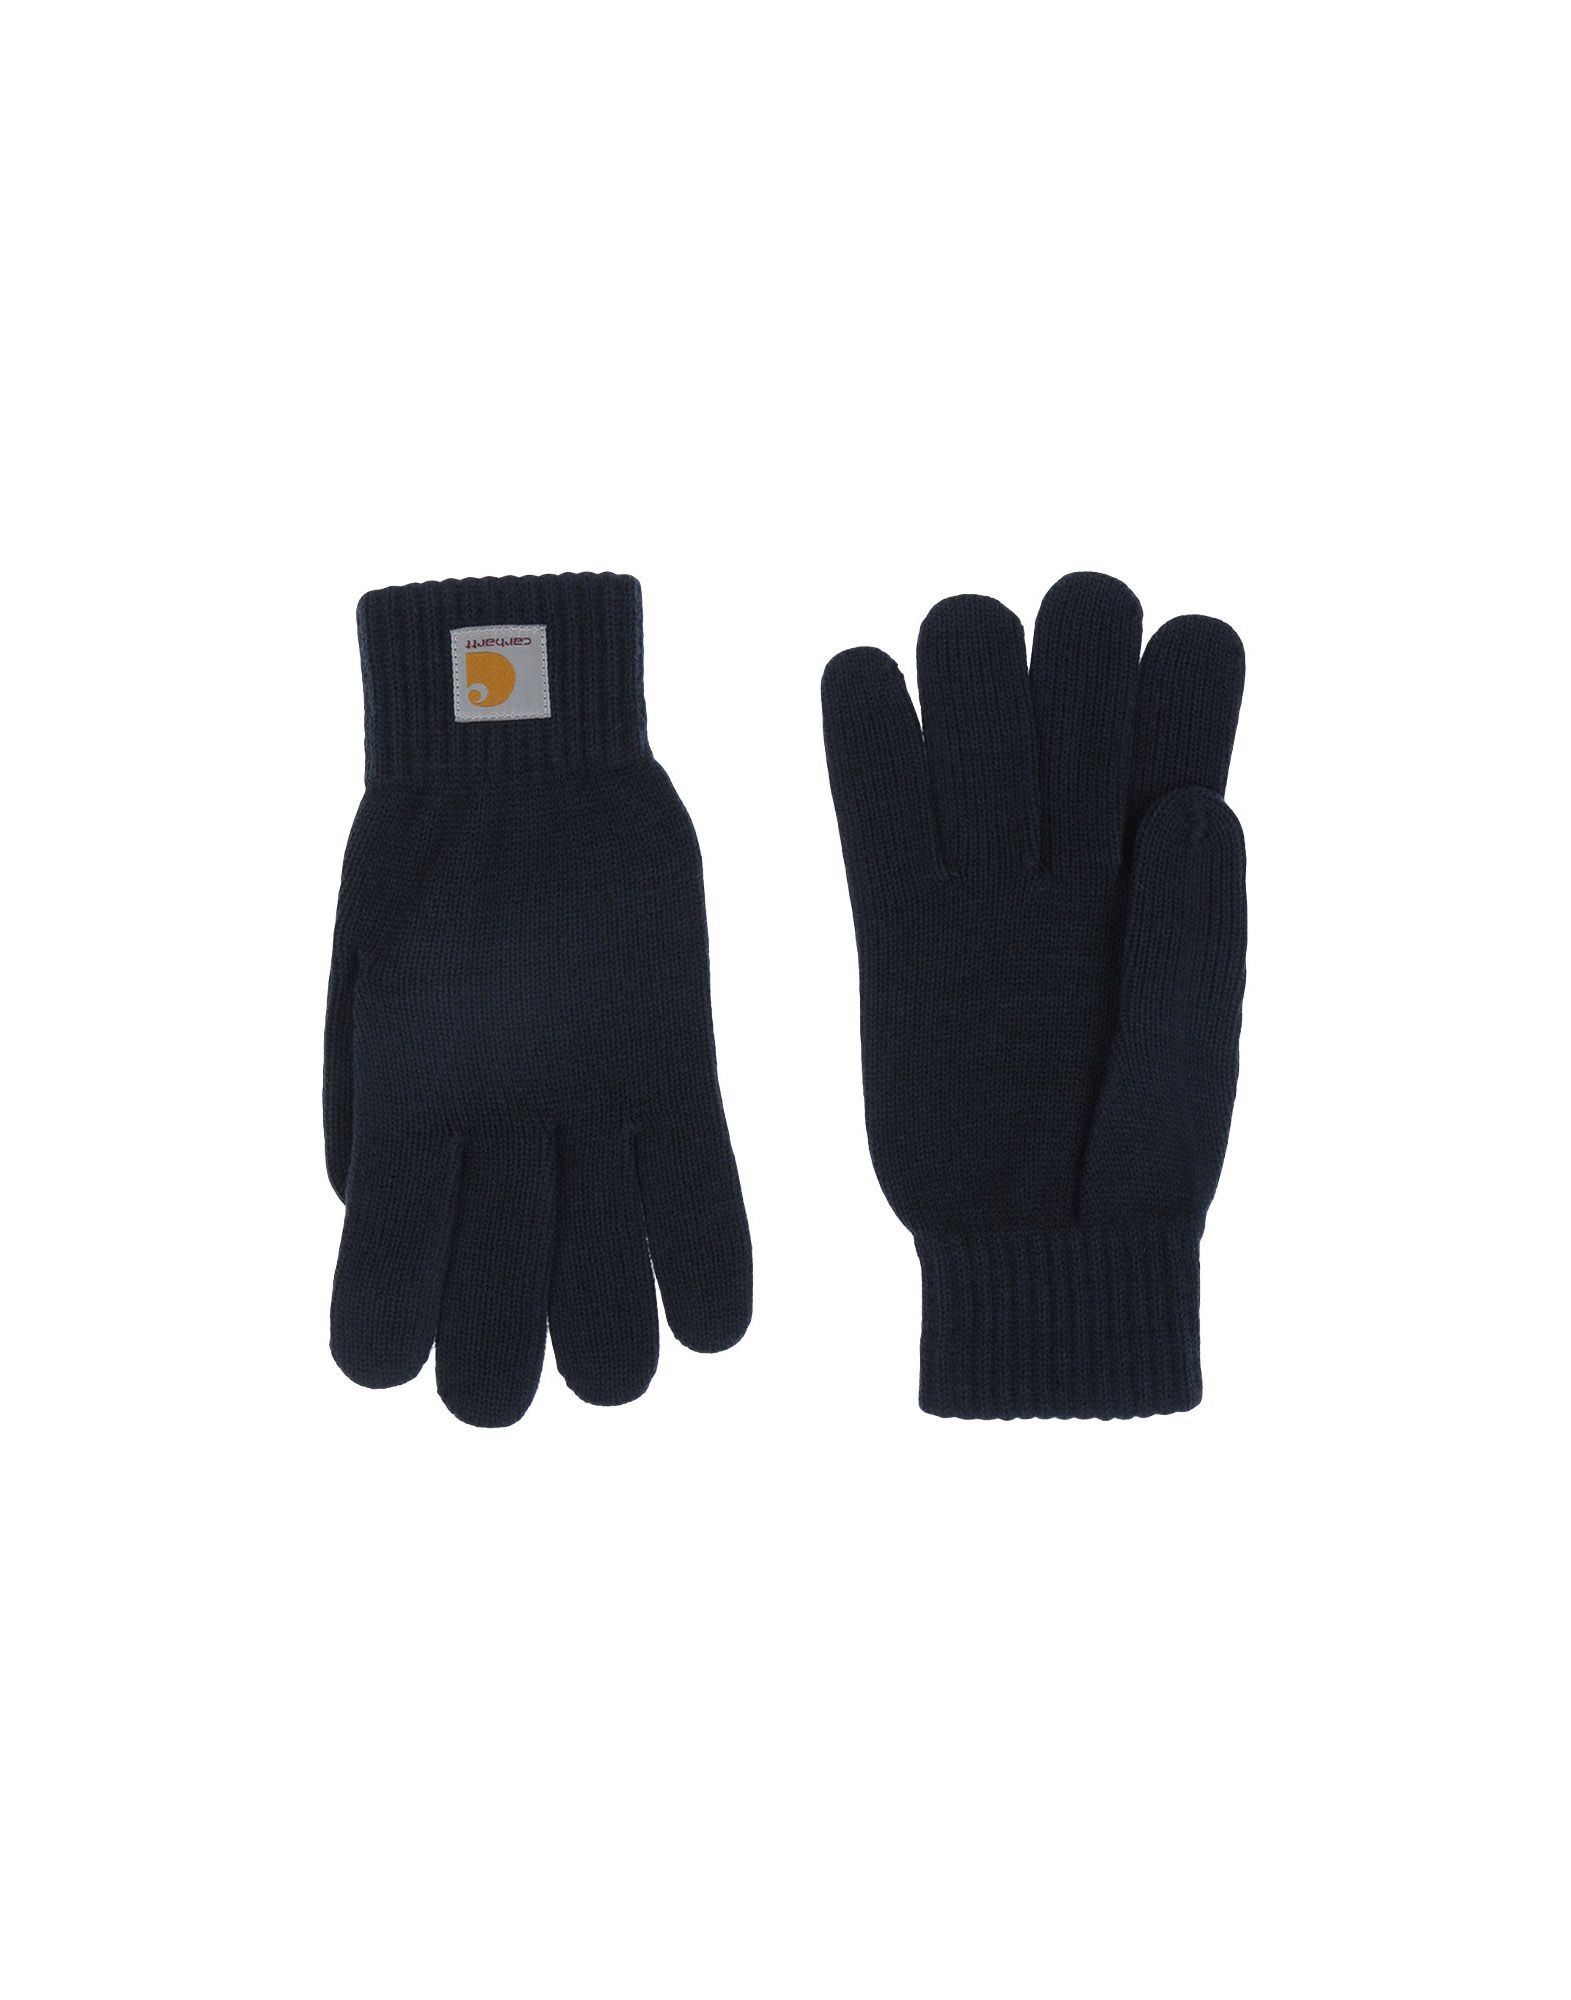 CARHARTT Gloves,46522842DA 4